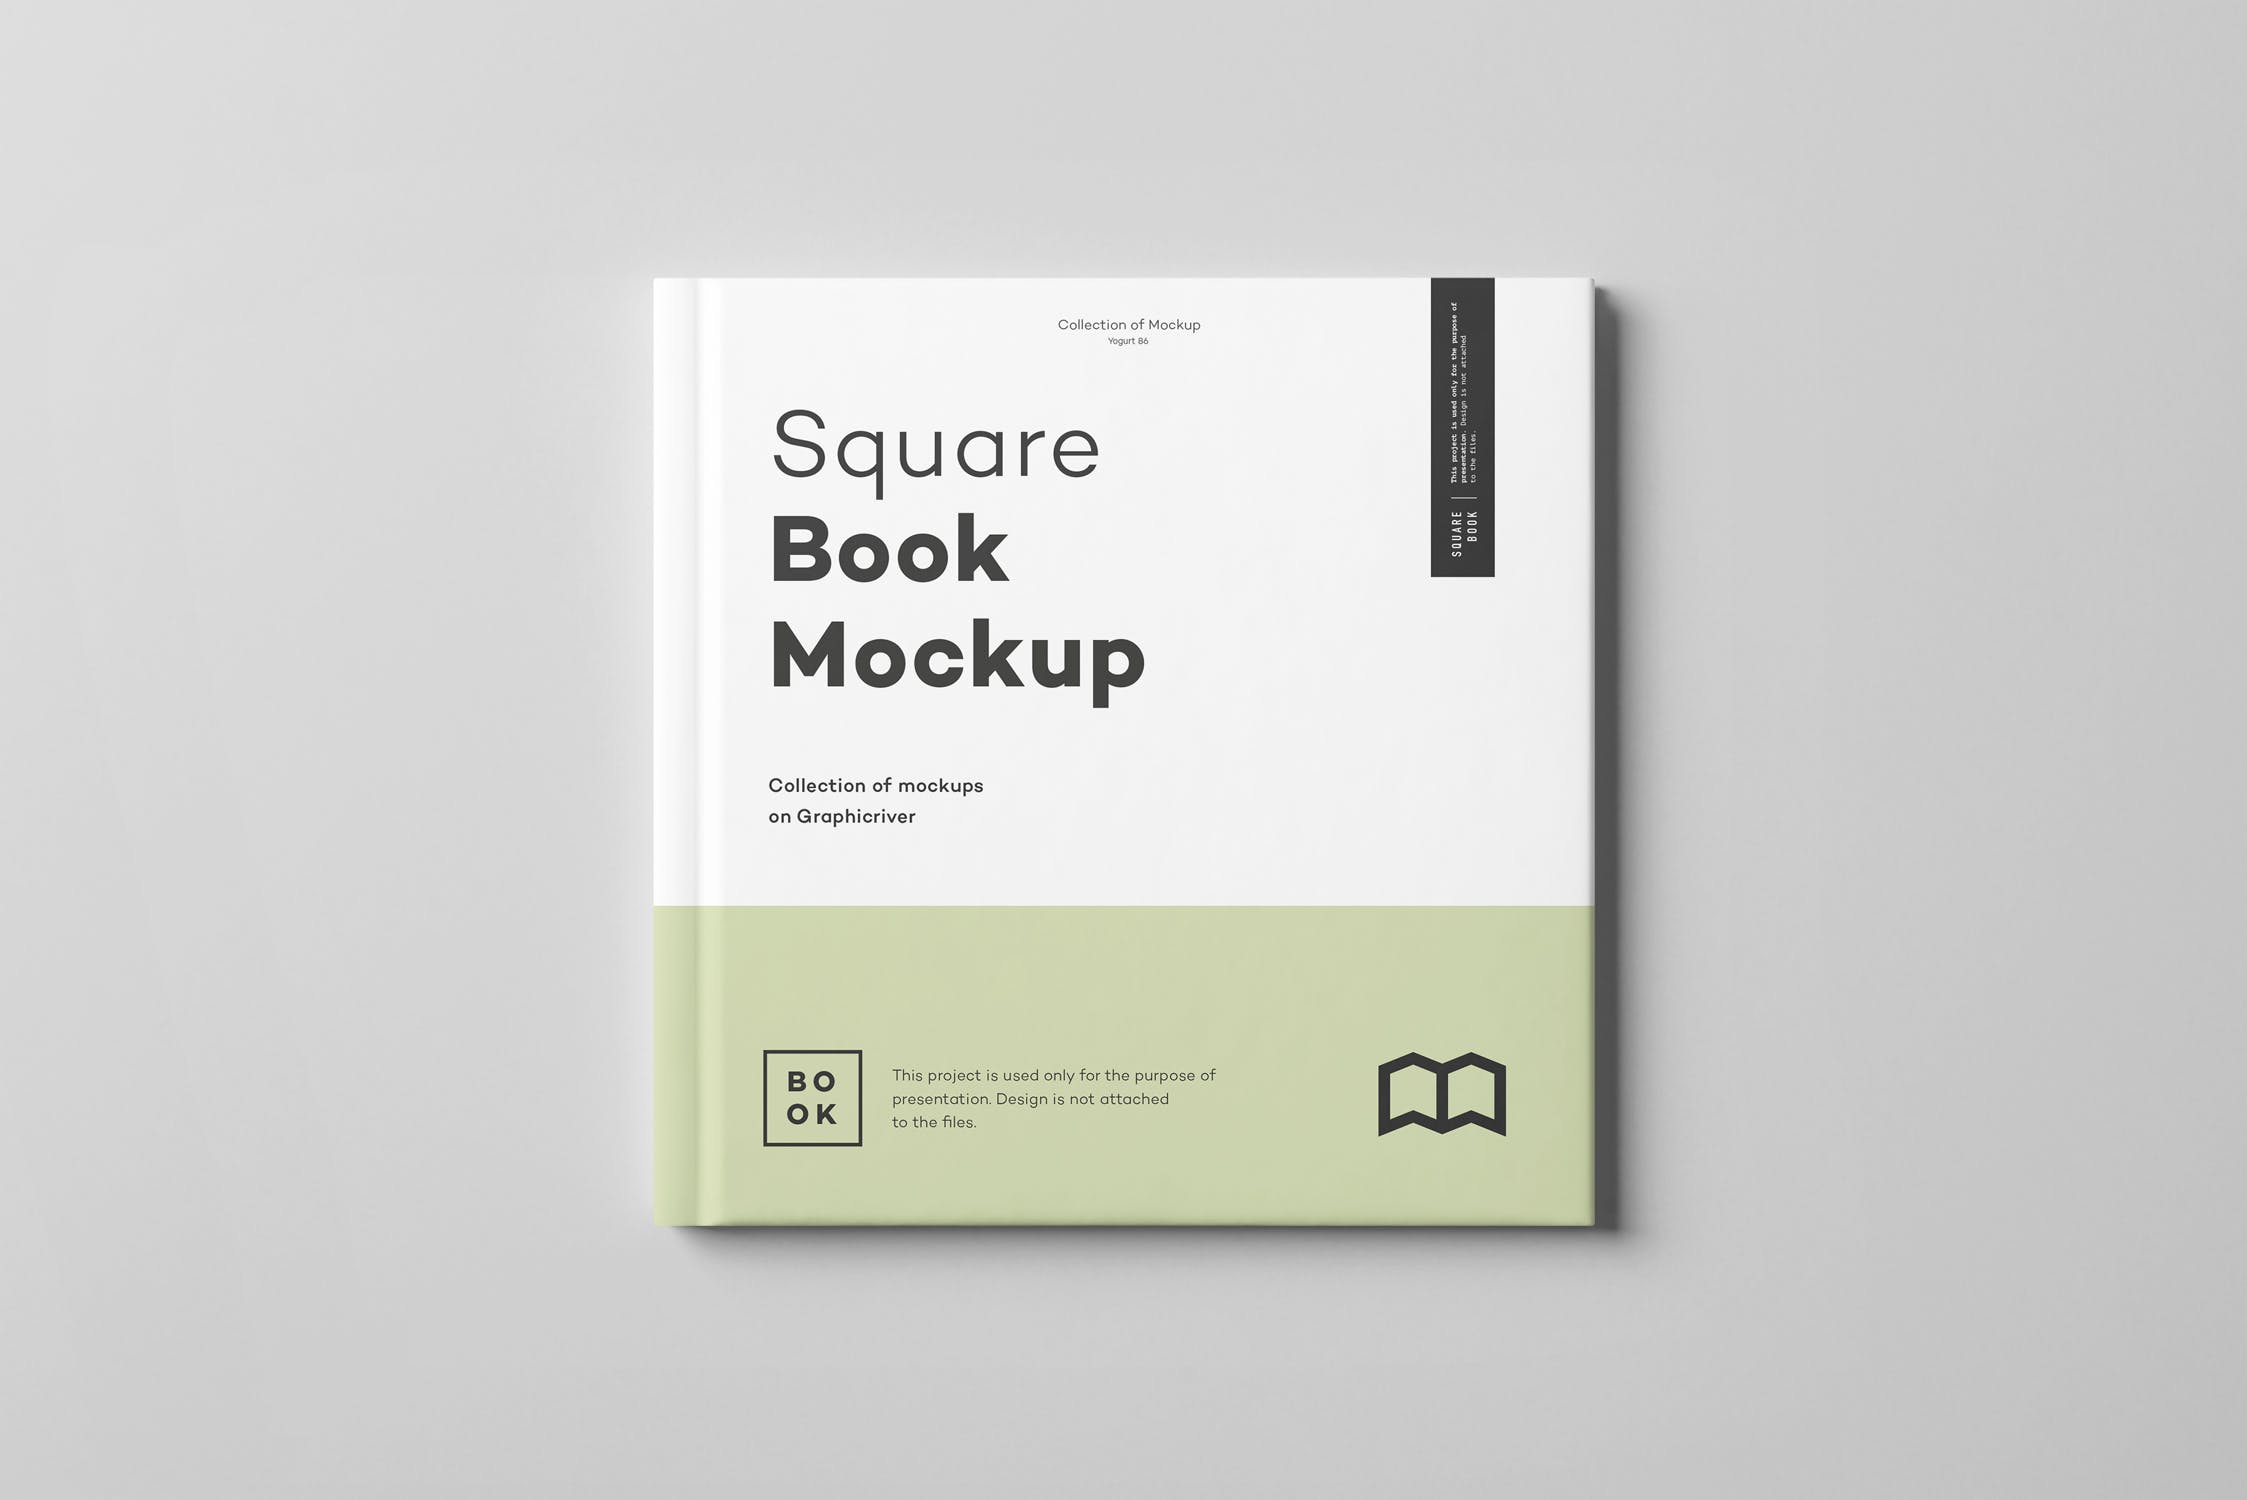 方形精装图书封面&内页版式设计预览样机 Square Book Mock up 2插图(14)